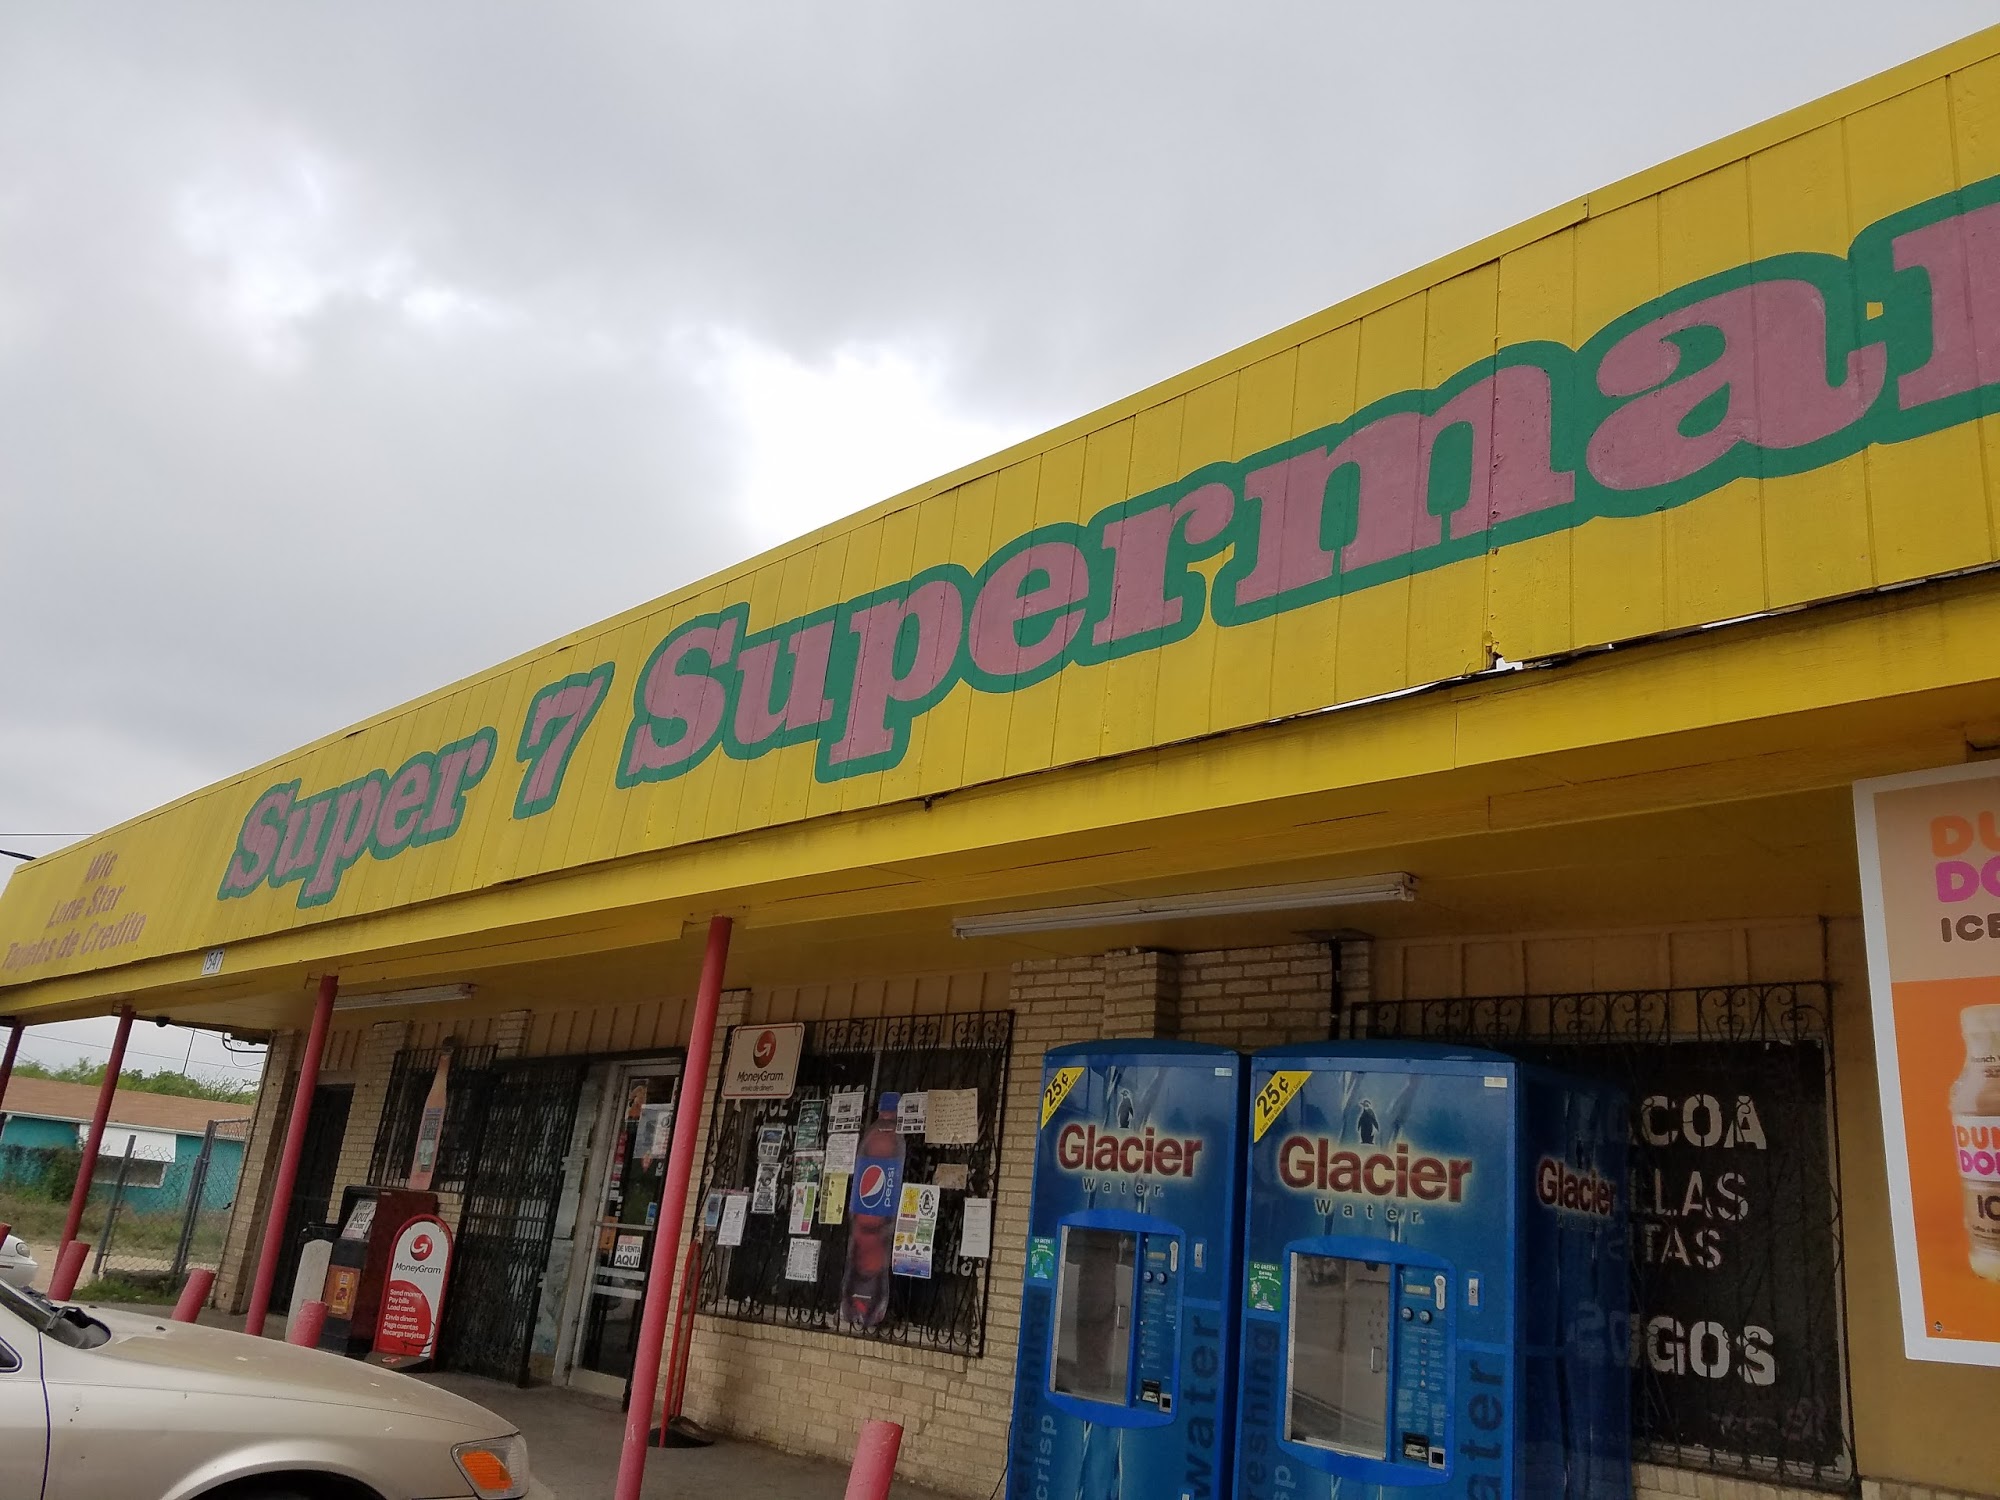 Super 7 Super Market